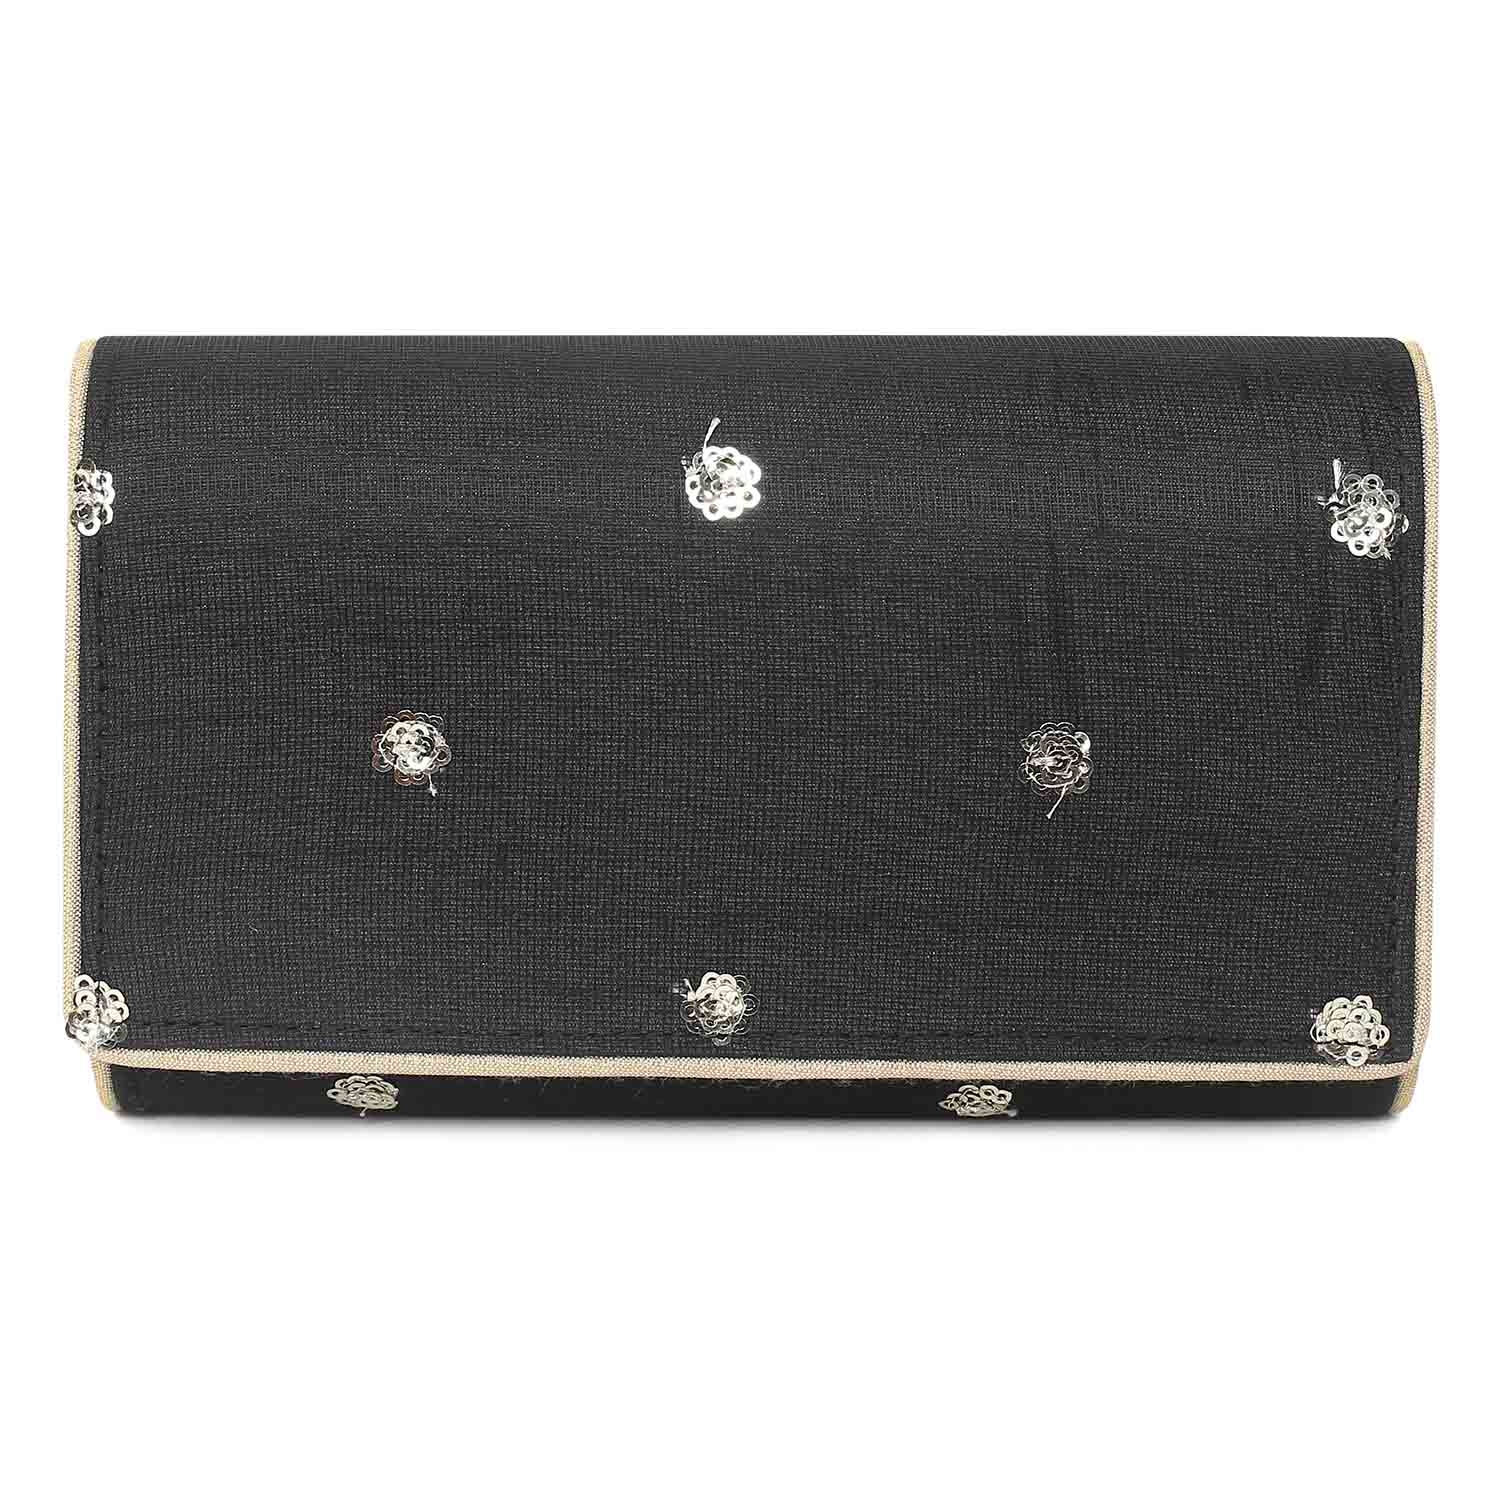 Basic black envelope clutch